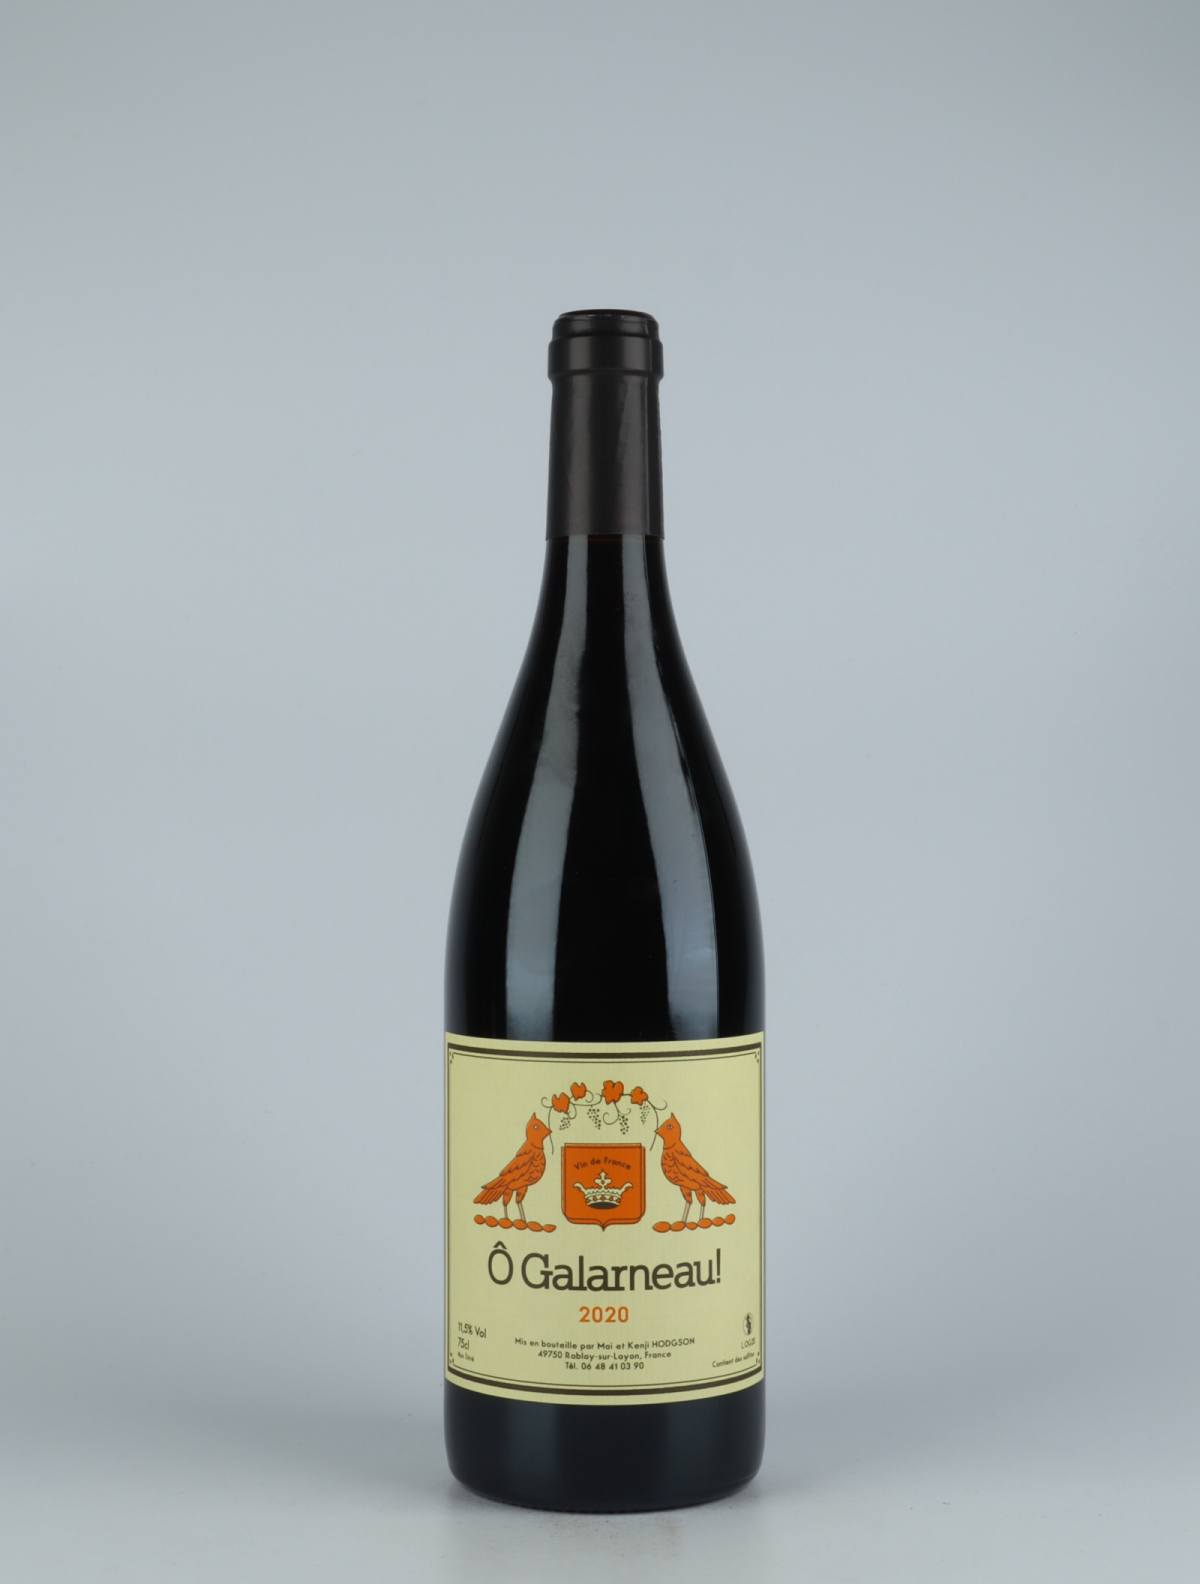 En flaske 2020 Ô Galarneau! Rødvin fra Mai et Kenji Hodgson, Loire i Frankrig